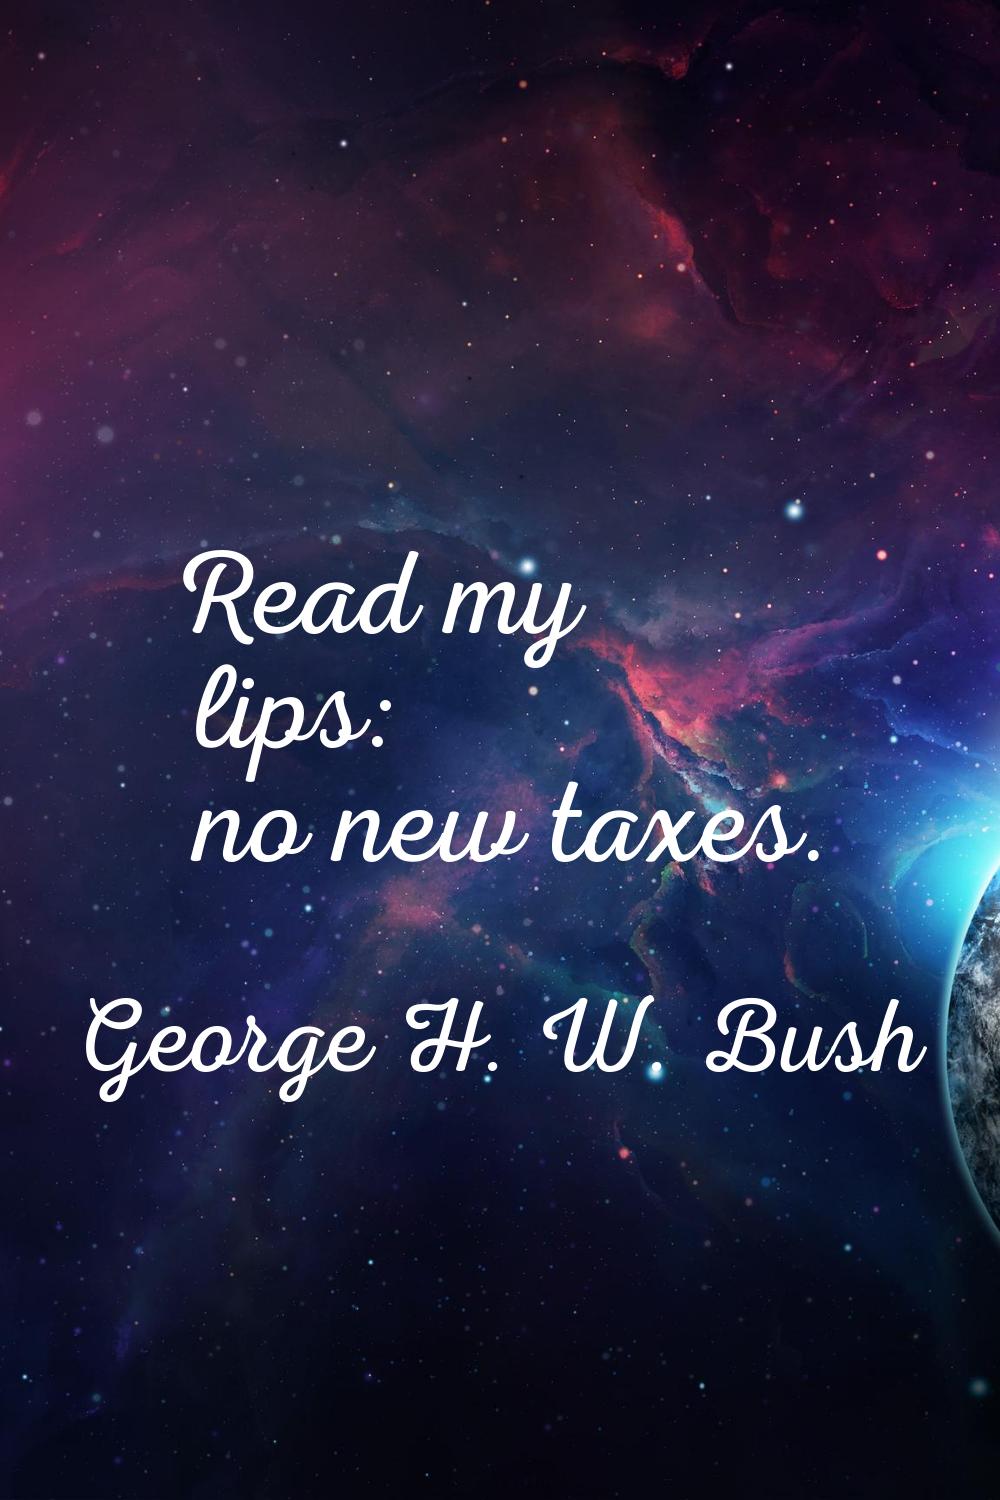 Read my lips: no new taxes.